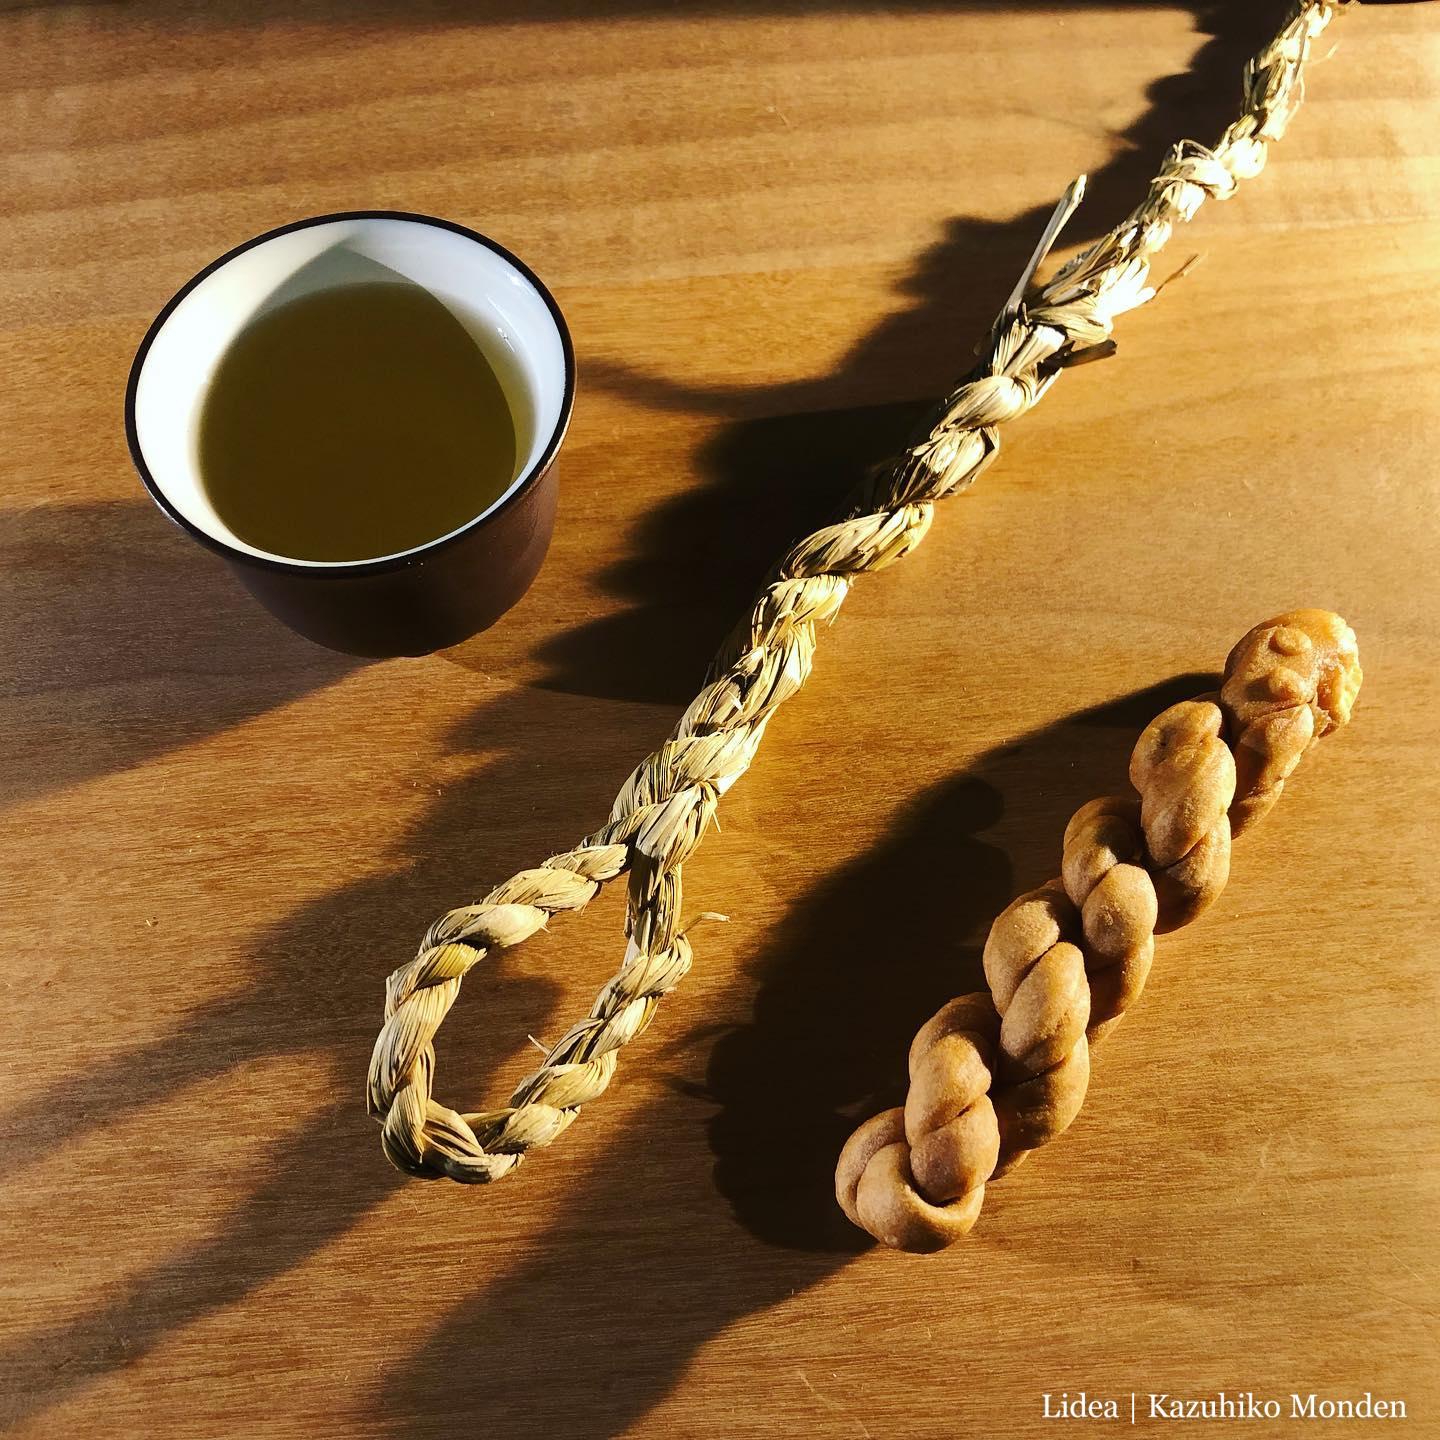 しめ縄作りの取材に行って、余った藁で輪っか付きの藁紐作った。隣は中華街のお菓子。